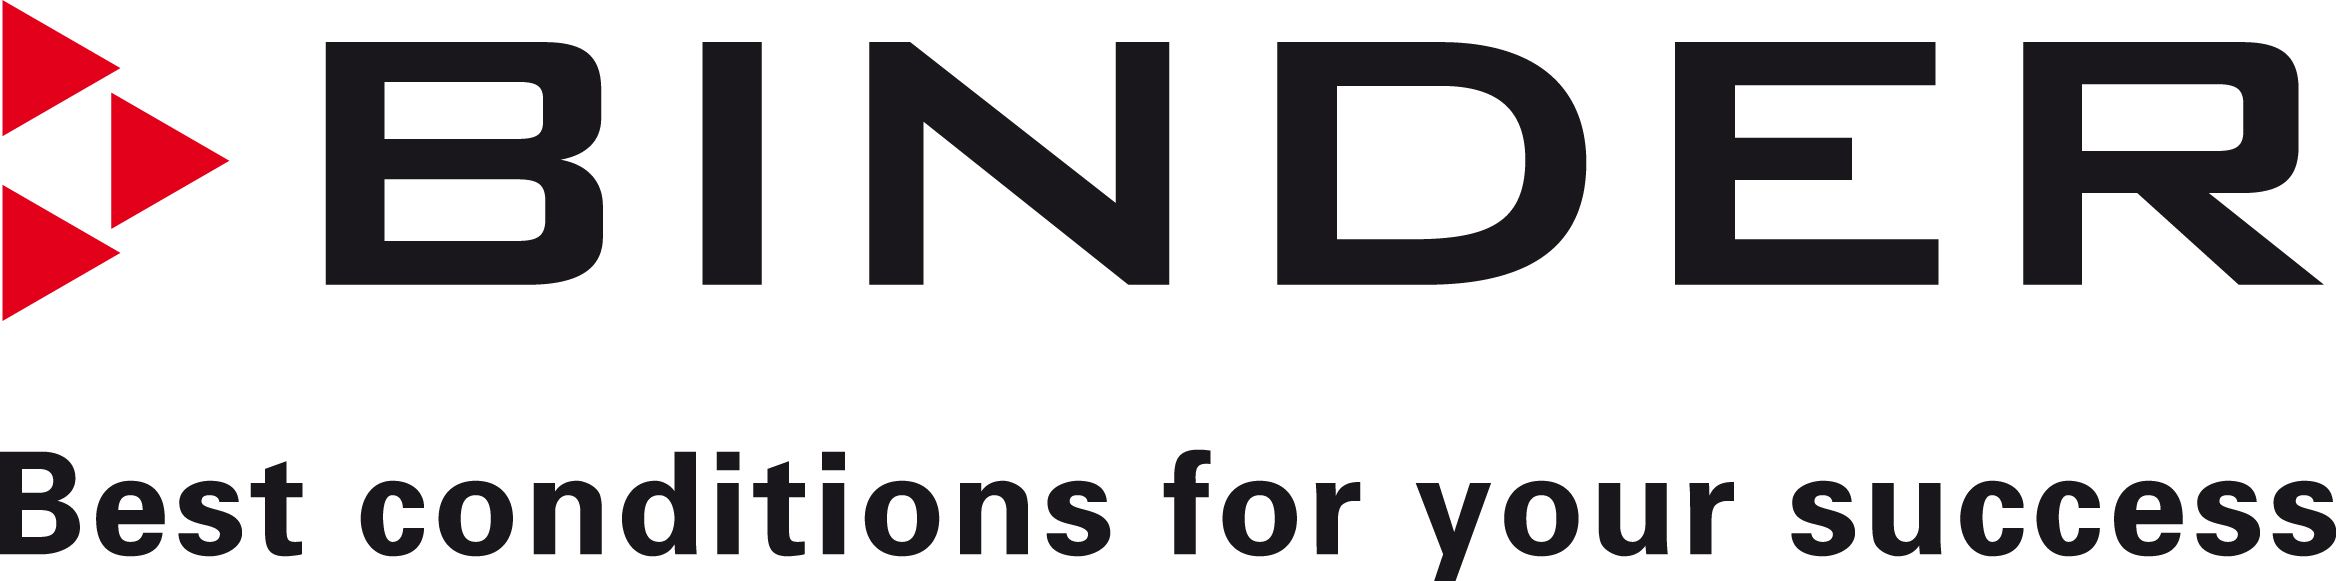 Logo Binder GmbH